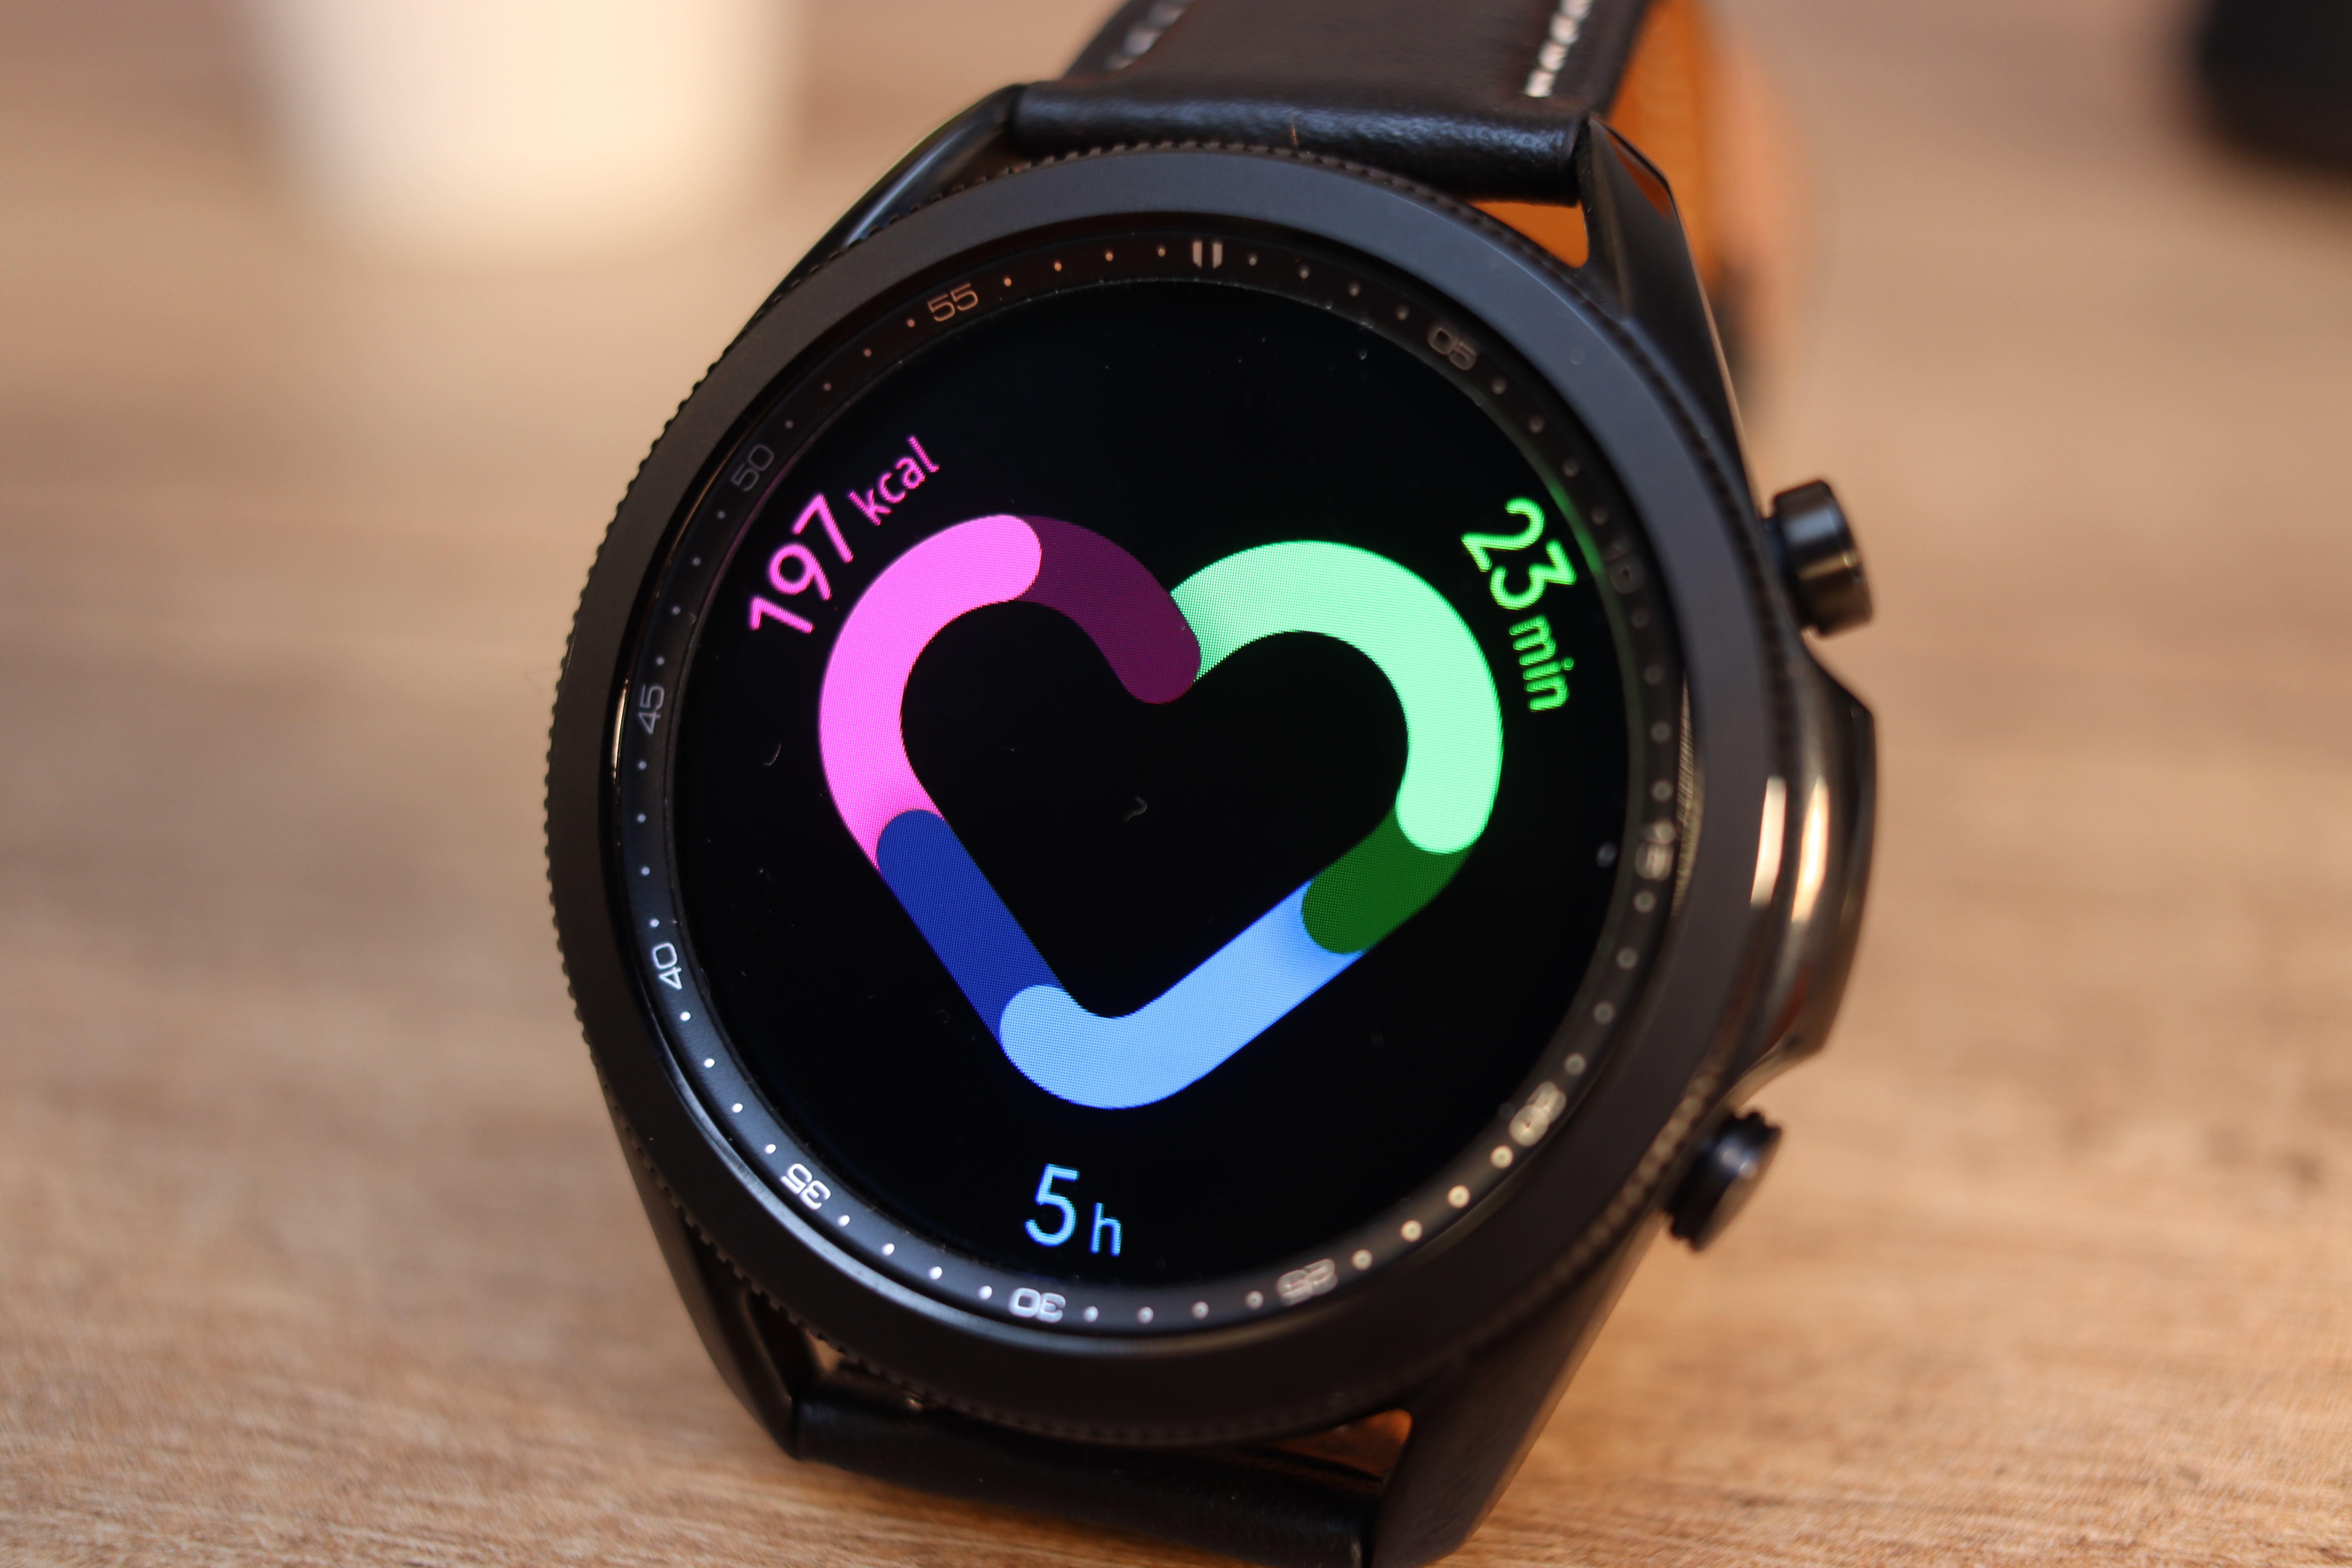 Samsung watch 5 отзывы. Часы Samsung Galaxy watch 2 линия питания. Смарт часы Samsung Galaxy watch c ,tptktv. Смарт-часы Samsung Galaxy watch 5 JN отзывы.